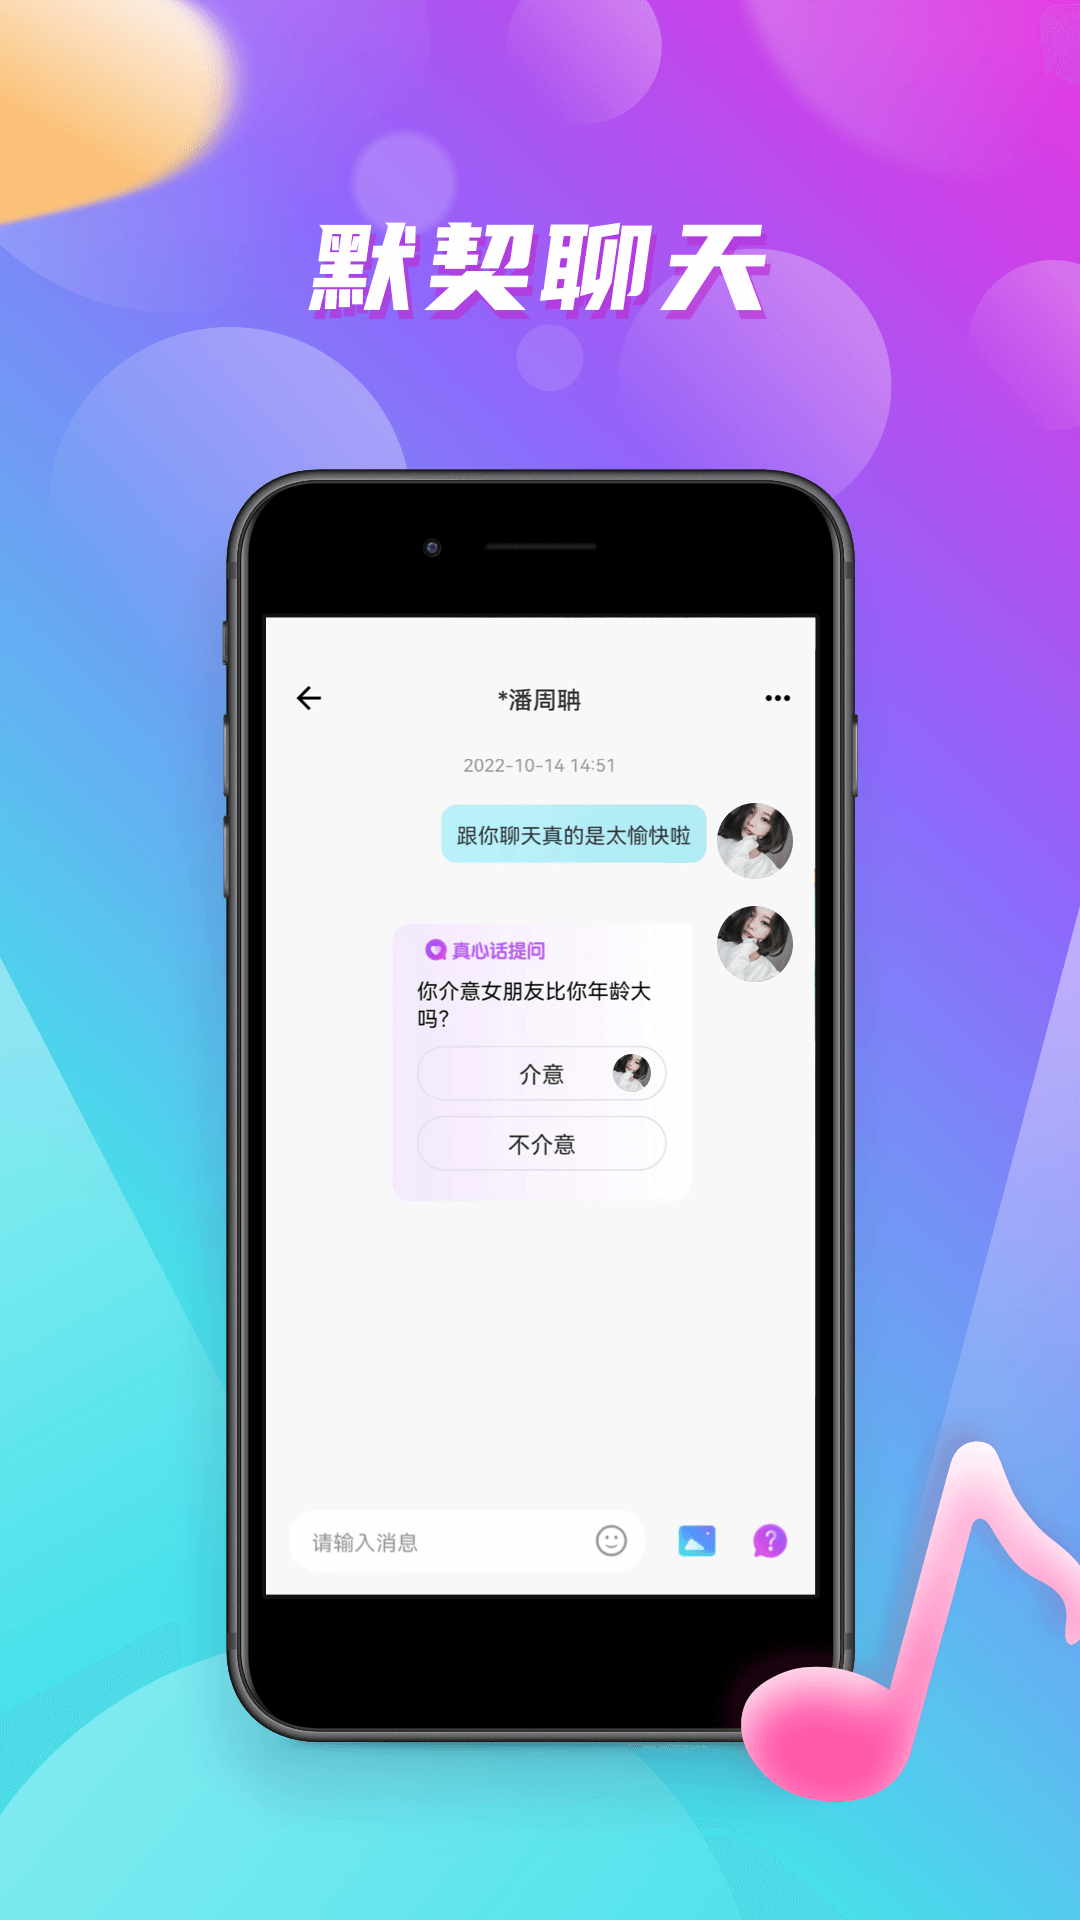 嗨嗨音恋安卓版 V1.0.5